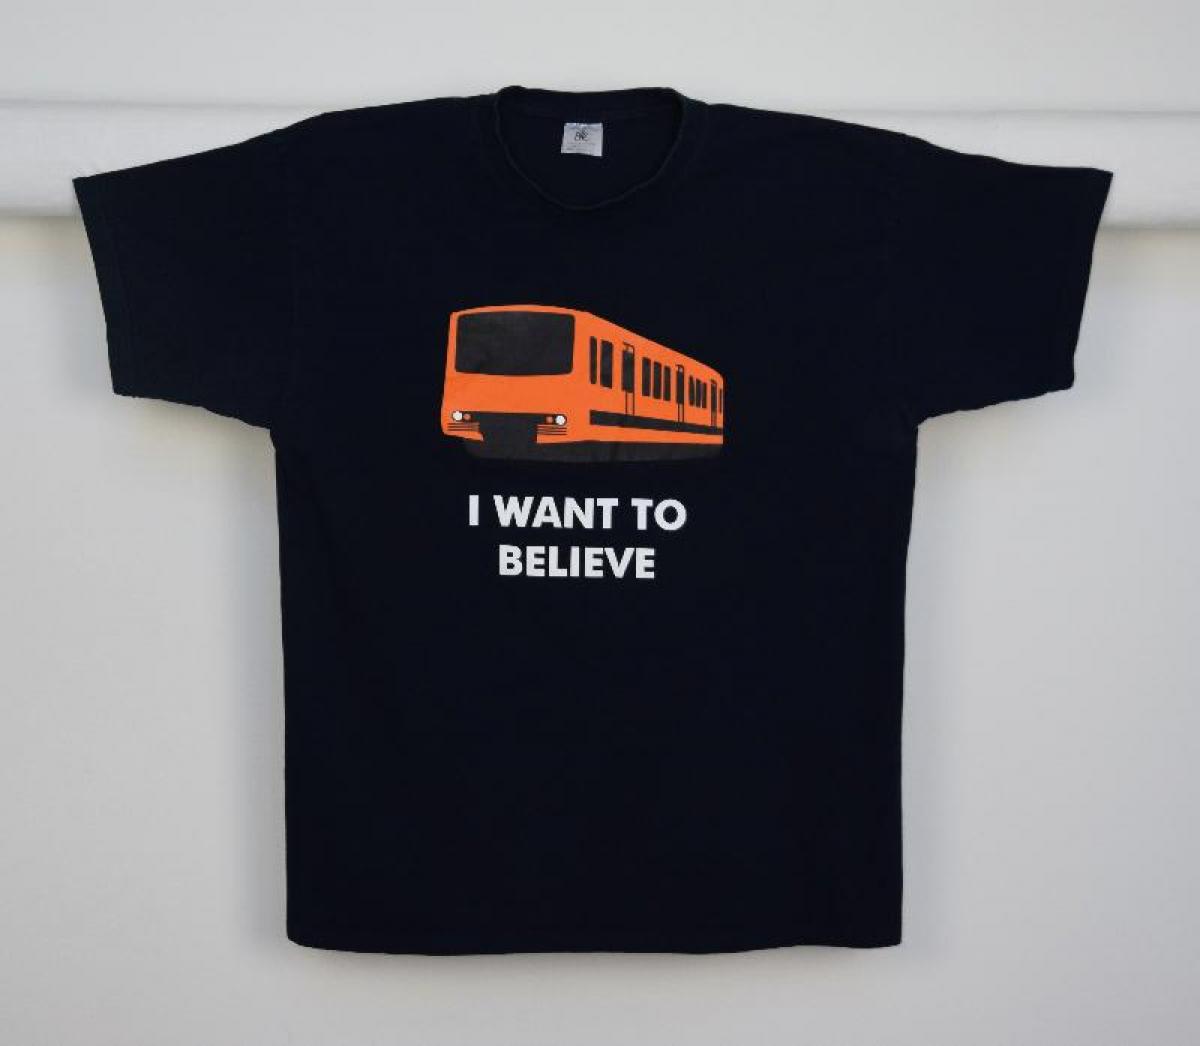 Musta t-paita, jossa metrovaunun kuva sekä teksti "I WANT TO BELIEVE"